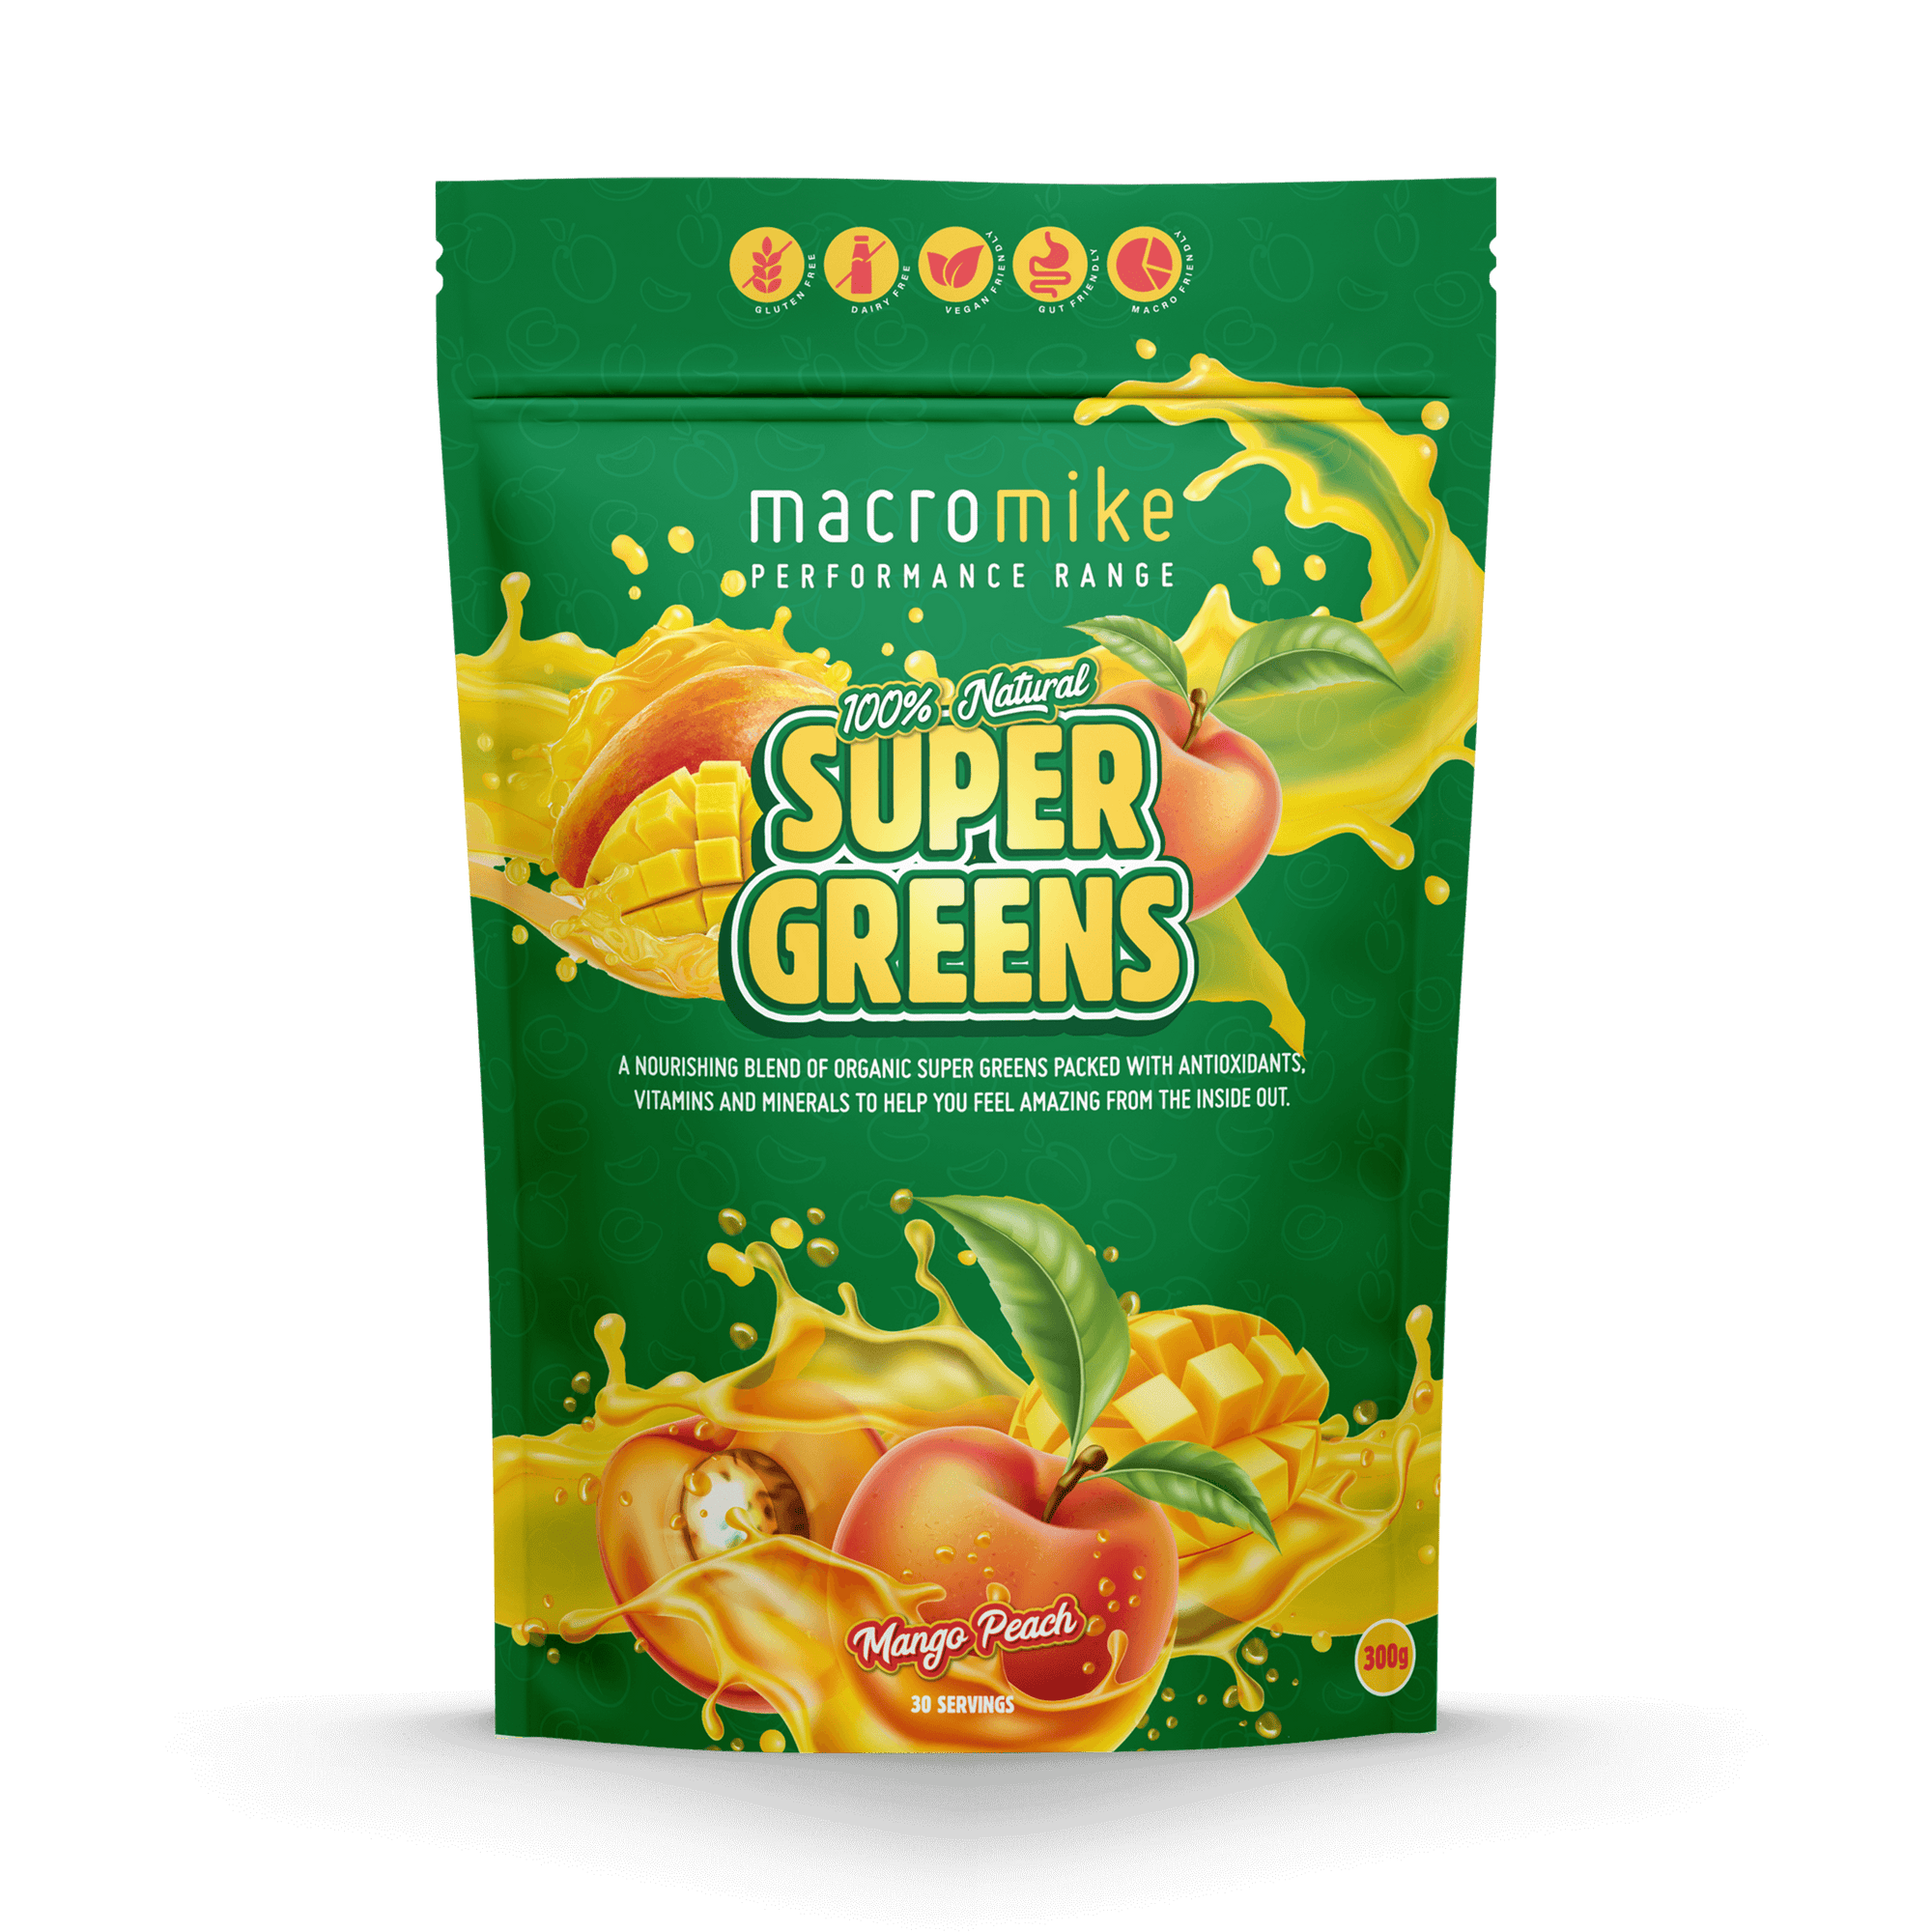 Super greens